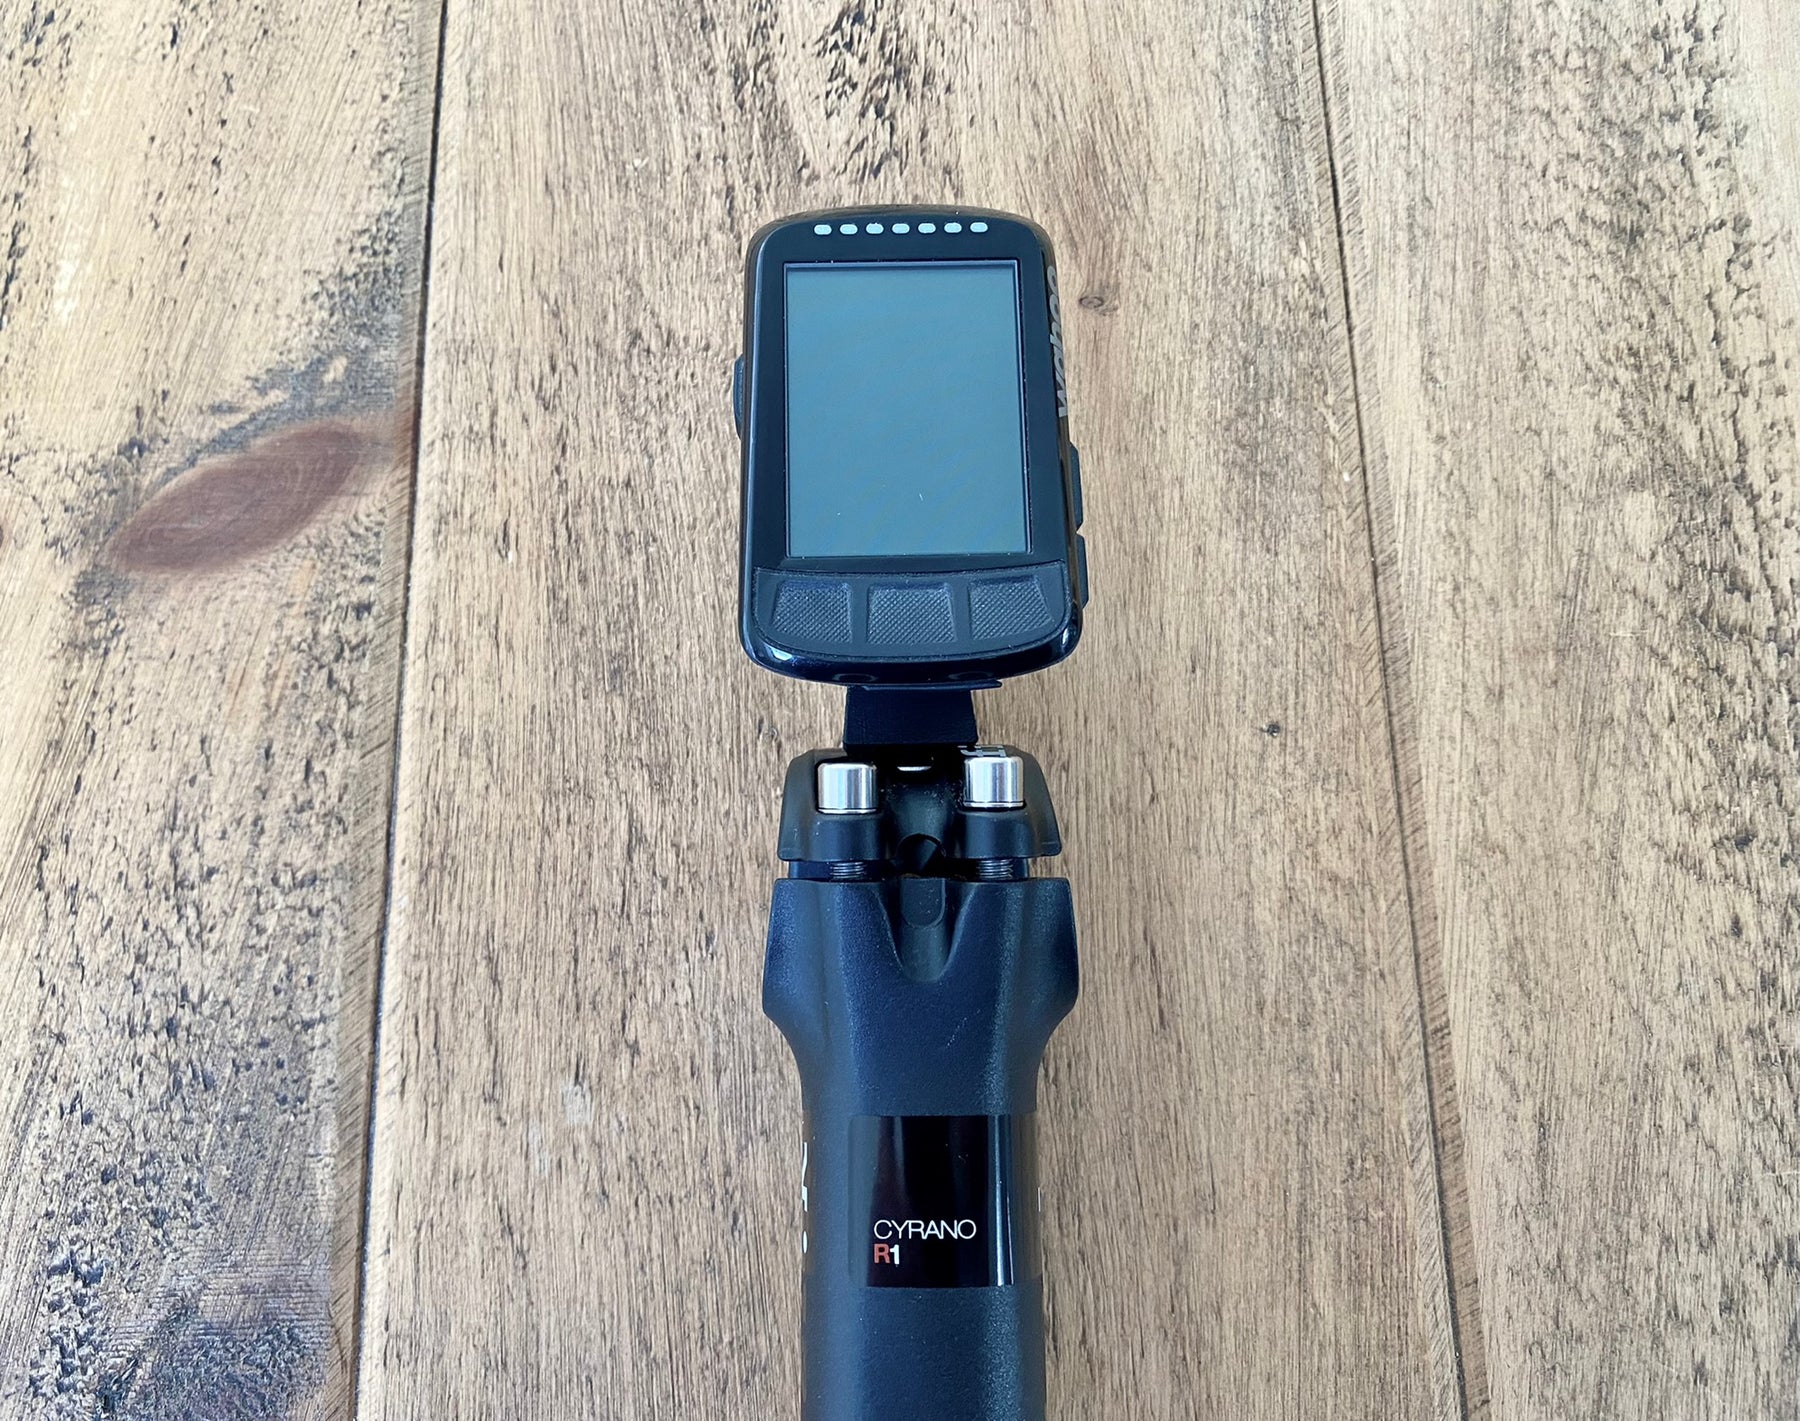 MagCAD Wahoo Elemnt Bolt GoPro Direct Mount